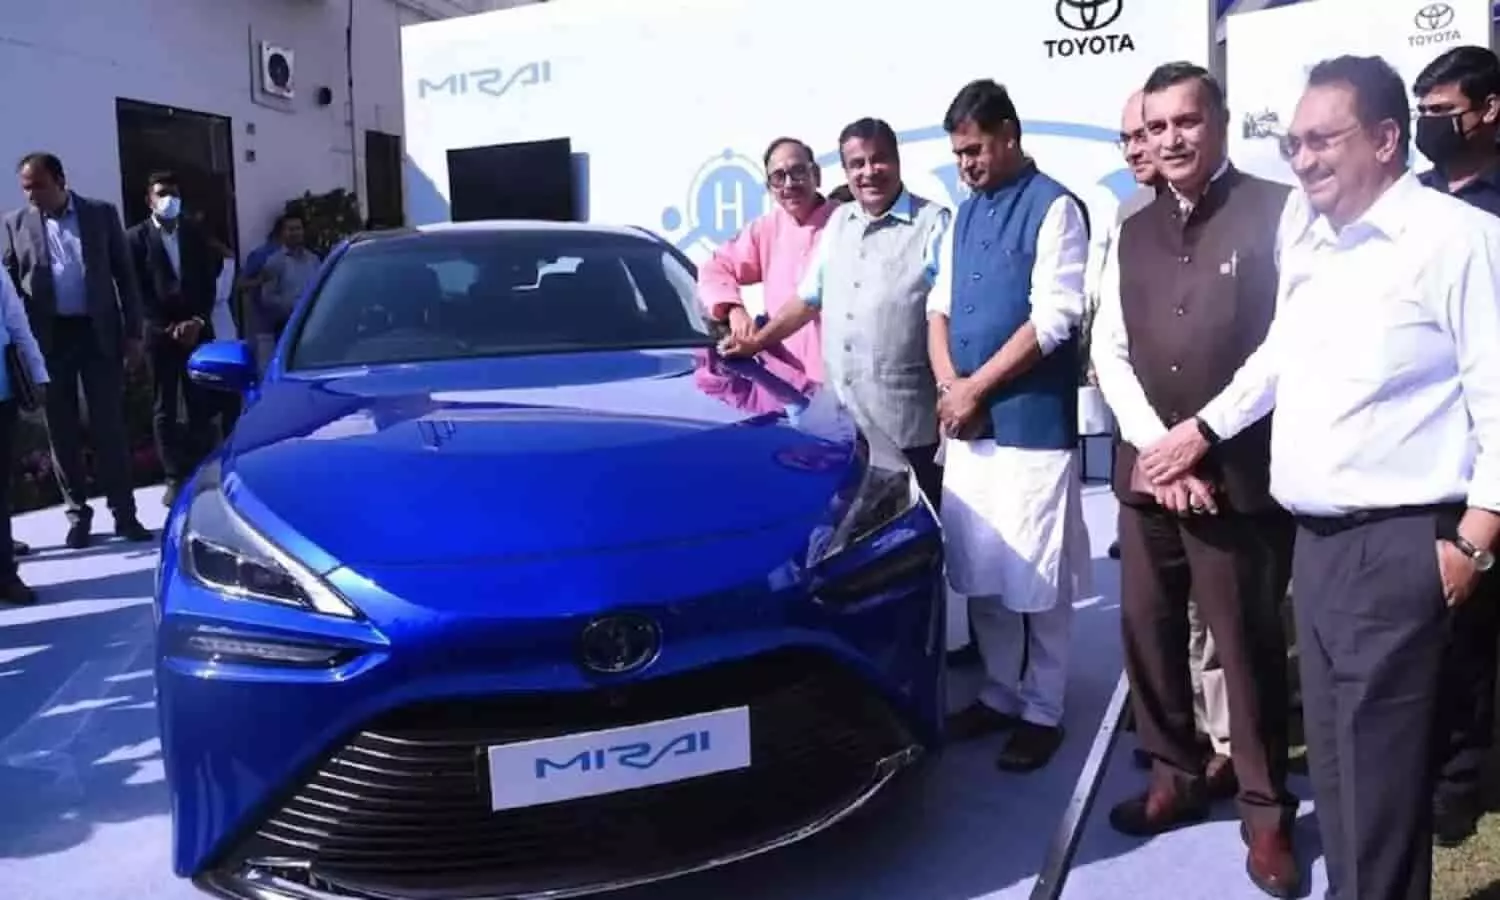 Toyota Mirai Launched: ग्रीन हाइड्रोजन फ्यूल से चलने वाली भारत की पहली कार टोयोटा मिराई लॉन्च हुई, साइलेंसर से धुंए की जगह पानी निकलेगा